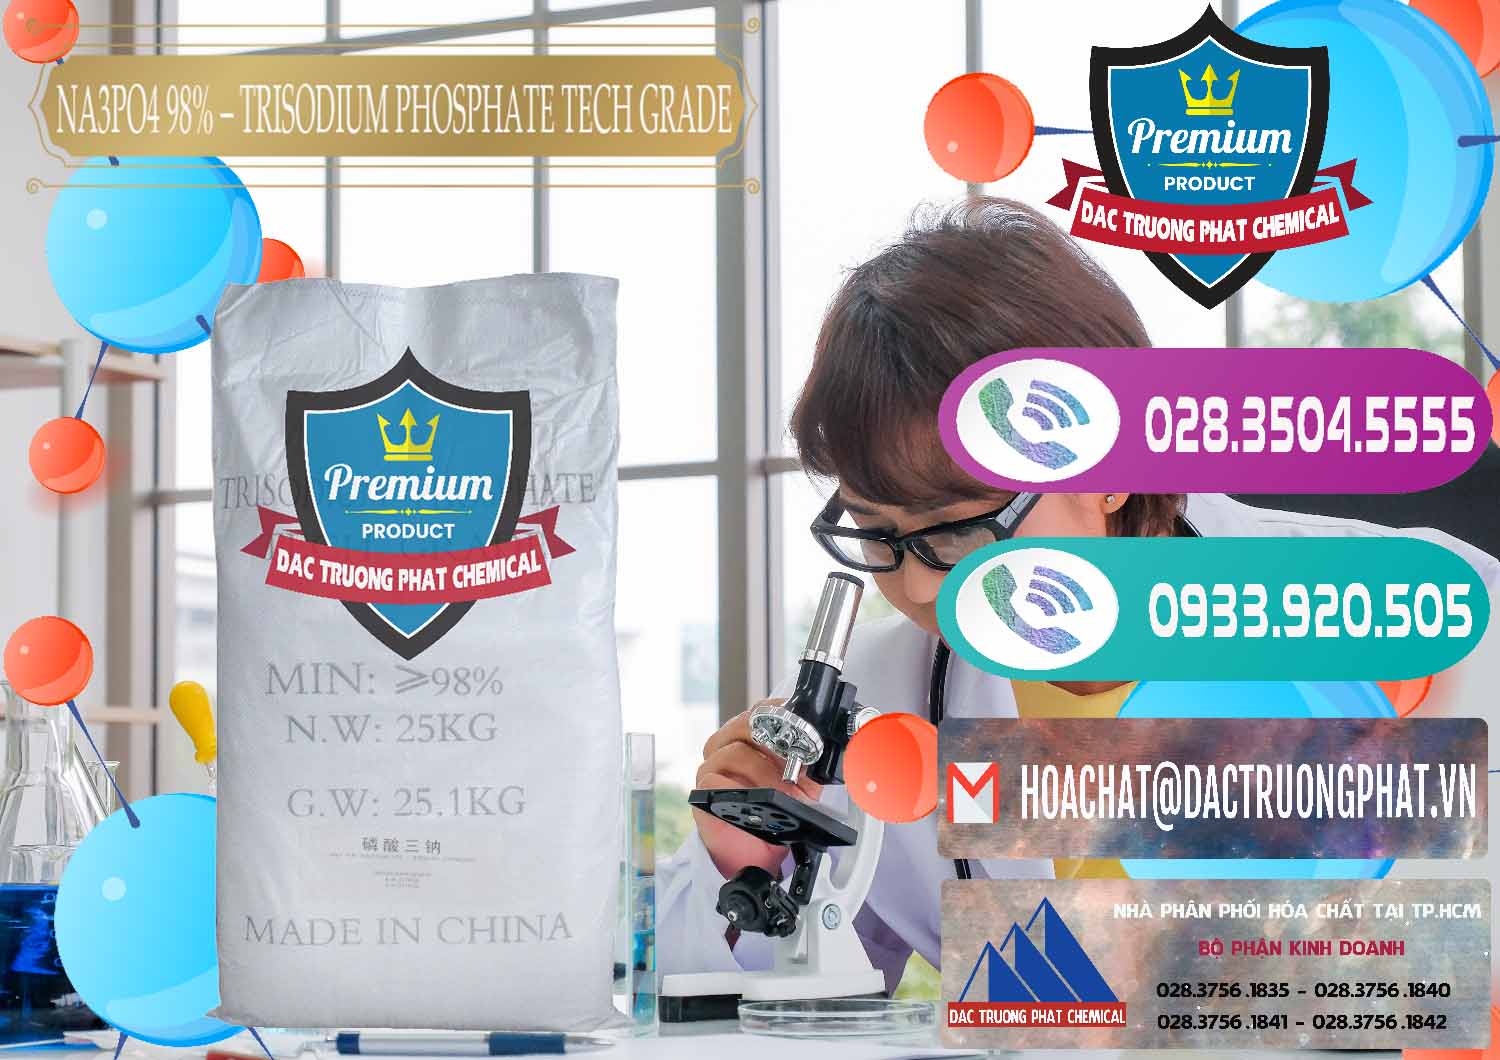 Phân phối - bán Na3PO4 – Trisodium Phosphate 96% Tech Grade Trung Quốc China - 0104 - Cty chuyên phân phối ( nhập khẩu ) hóa chất tại TP.HCM - hoachatxulynuoc.com